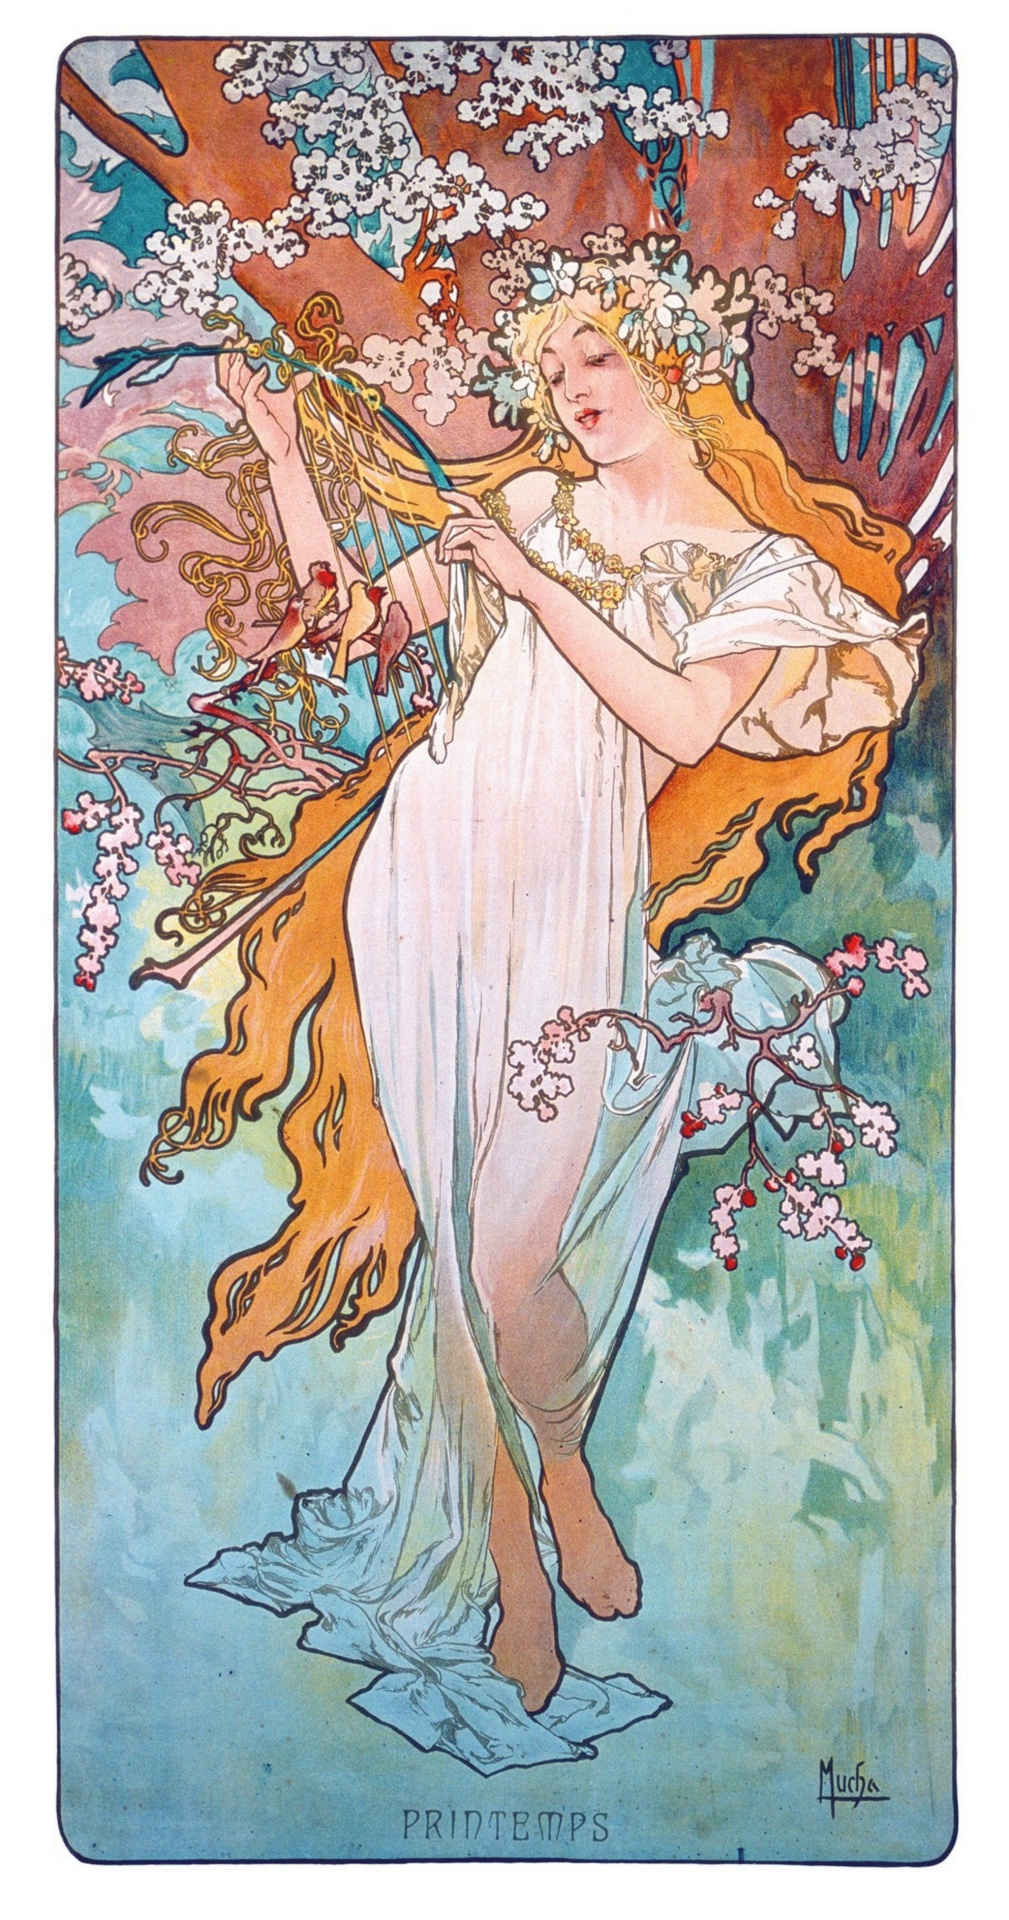 Woman Art Nouveau Art Vintage Poster Alphonso Mucha Illustration